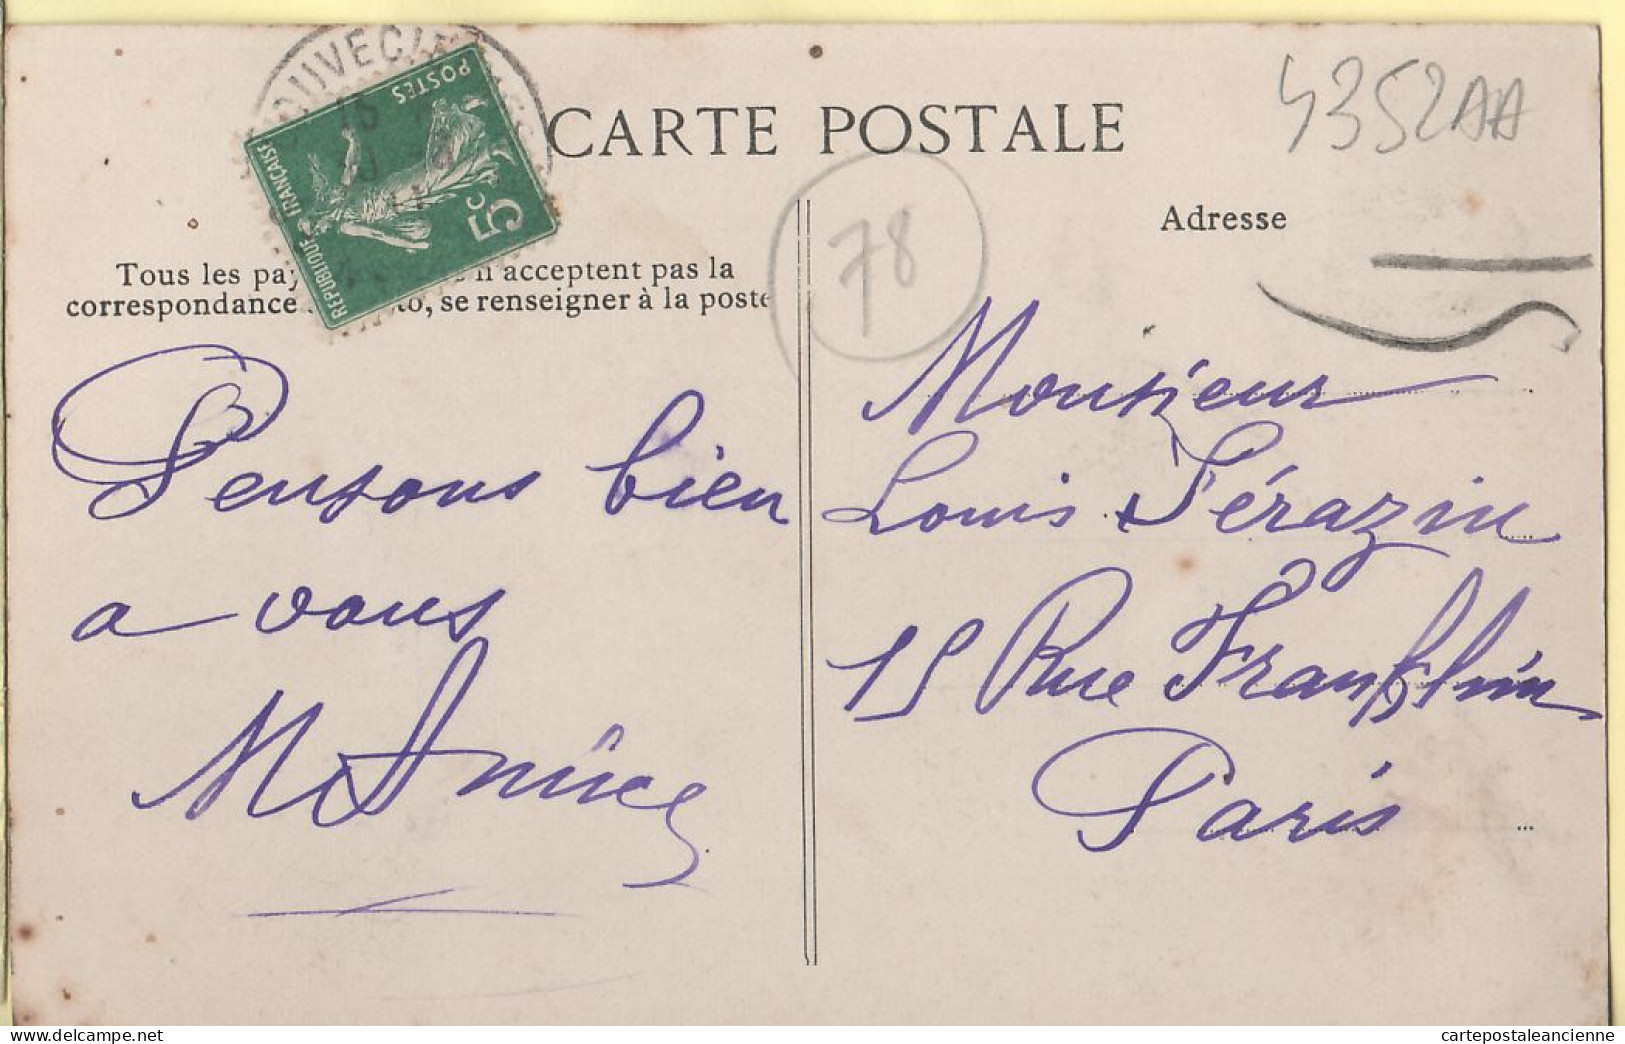 19331 / LOUVECIENNES 78-Yvelines Chateau Du BAS-PRUNAY1911 à SERAZIN Paris E.L.D LE DELEY 53 Seine-Oise  - Louveciennes